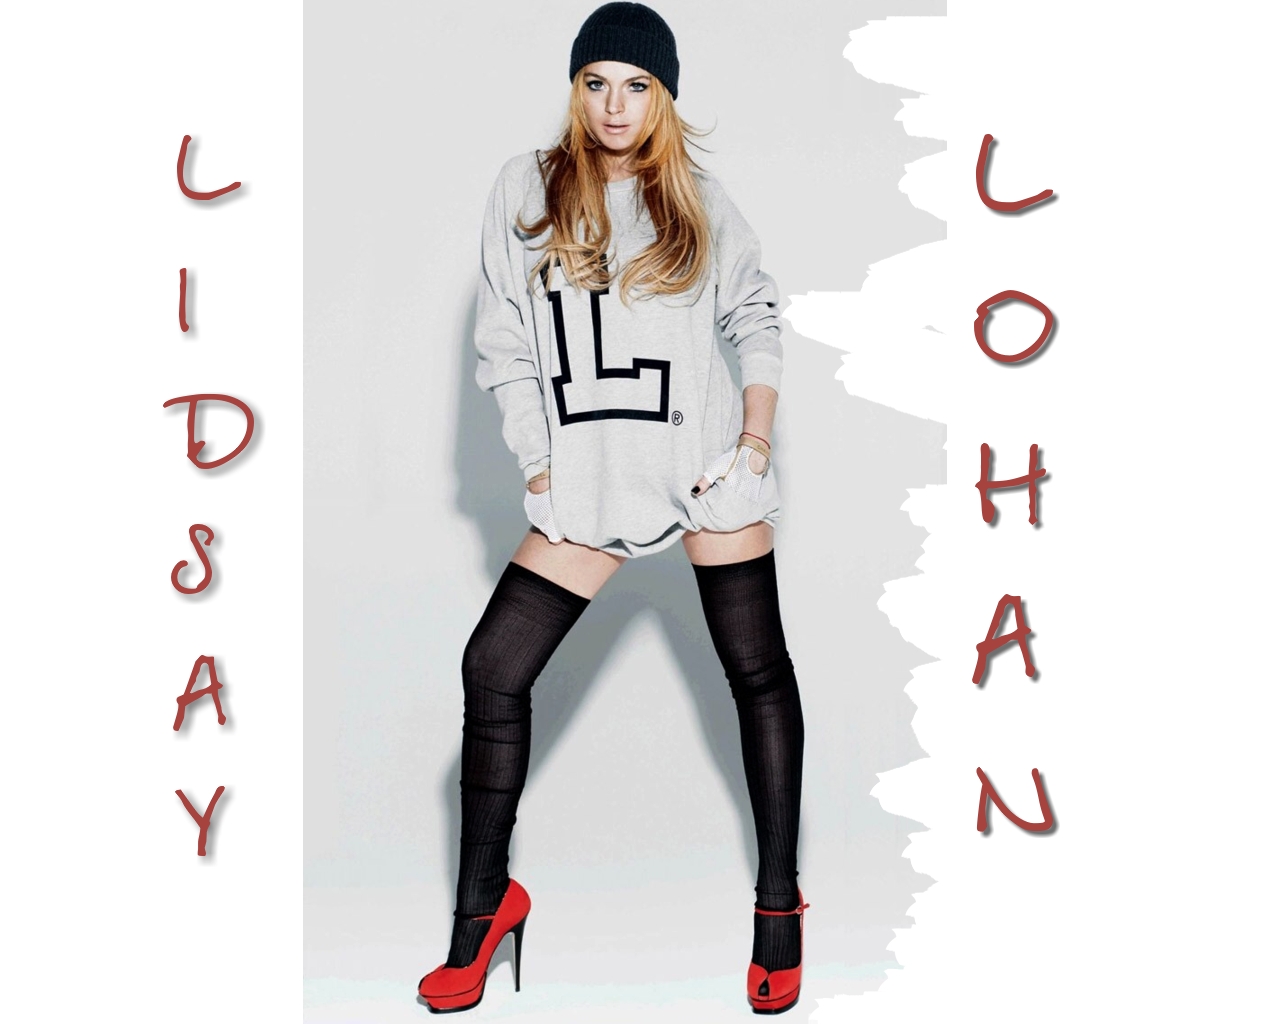 Lindsay lohan